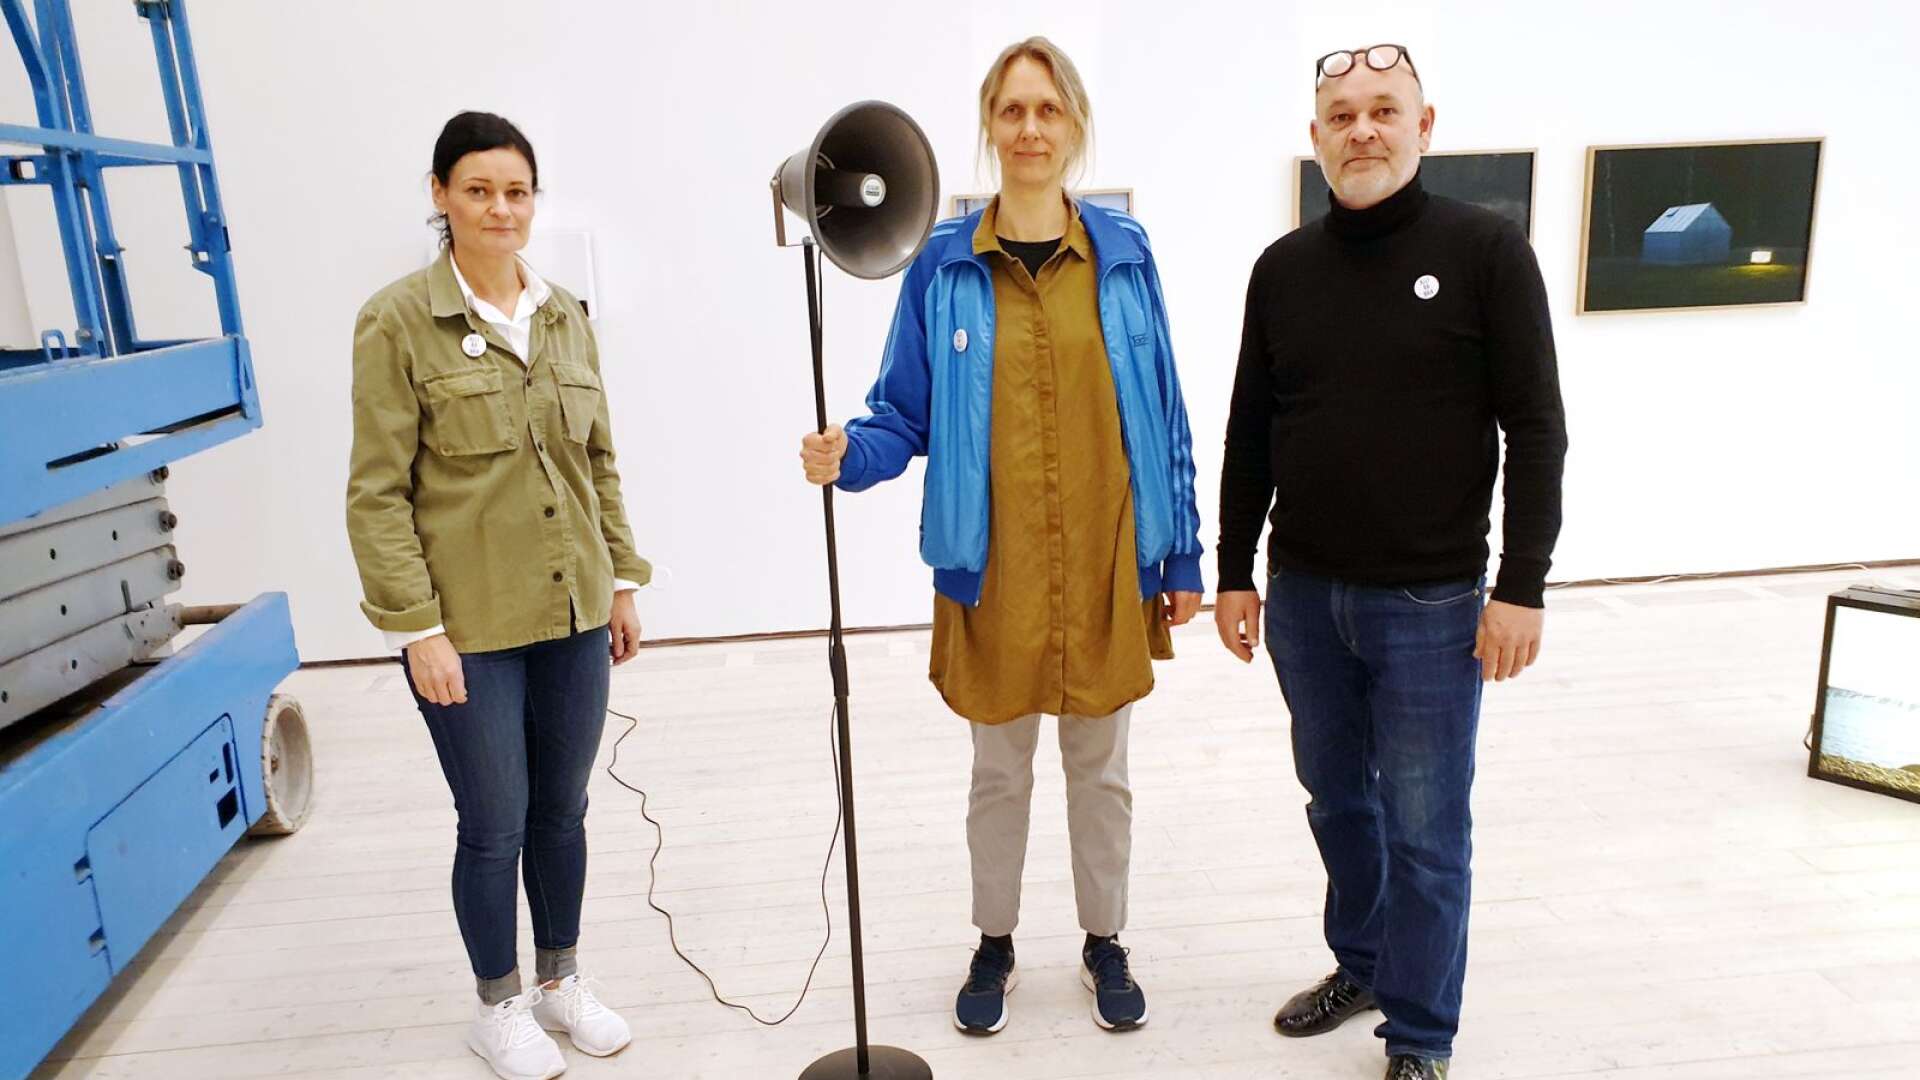 Konstnären Ulrika Sparre flankerad av Maria Lobell, kulturchef, och Michael Walter, intendent. Här med ljudverket ”Jag är störst”.